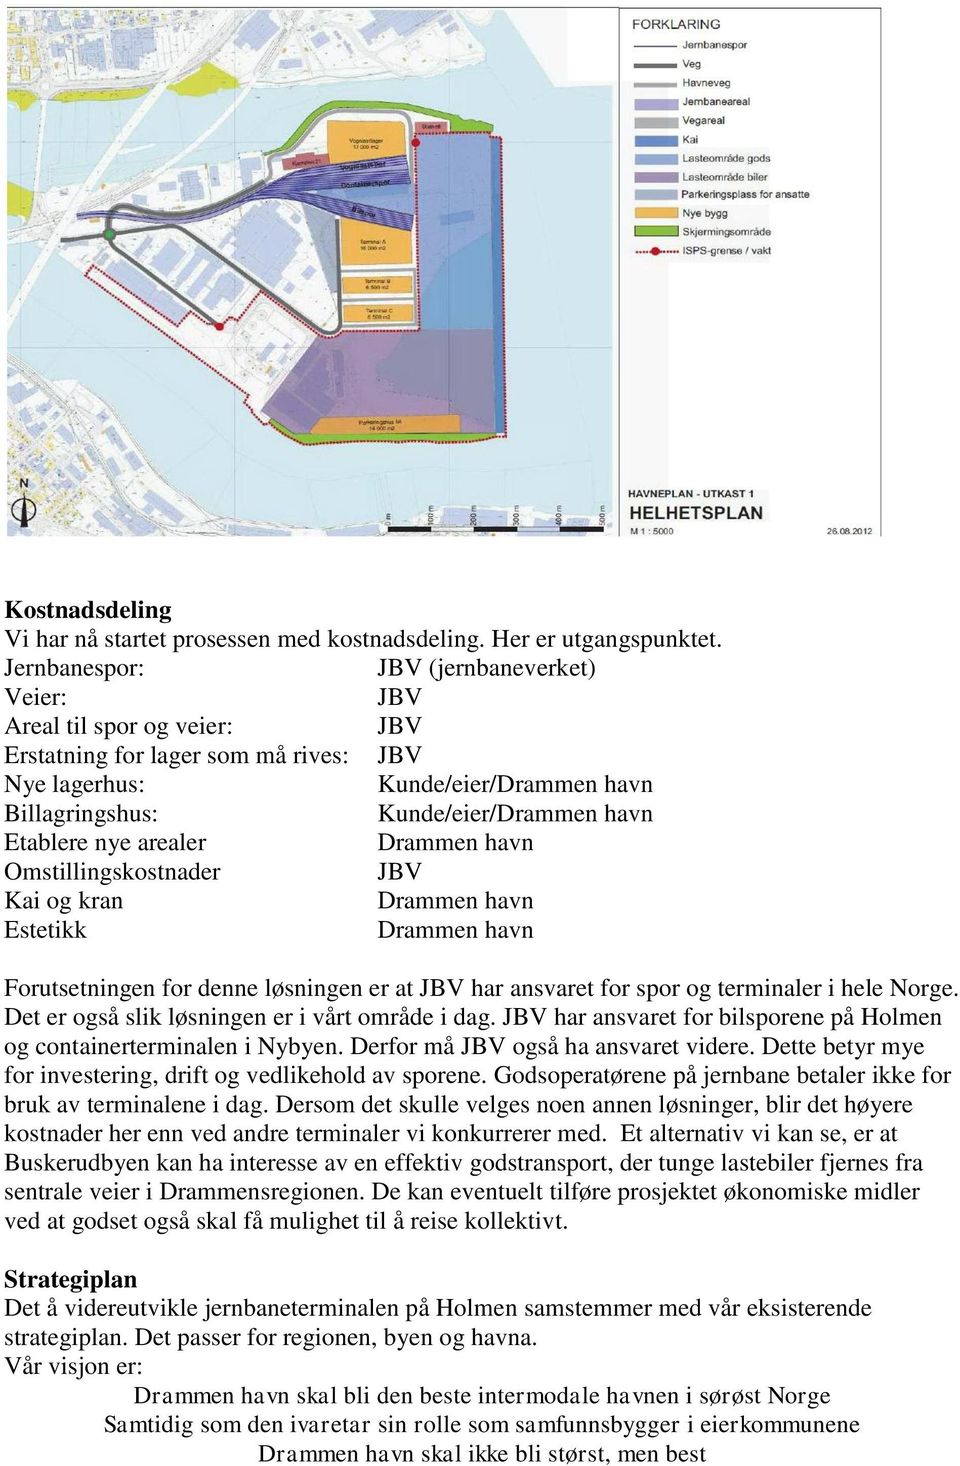 Etablere nye arealer Drammen havn Omstillingskostnader JBV Kai og kran Drammen havn Estetikk Drammen havn Forutsetningen for denne løsningen er at JBV har ansvaret for spor og terminaler i hele Norge.